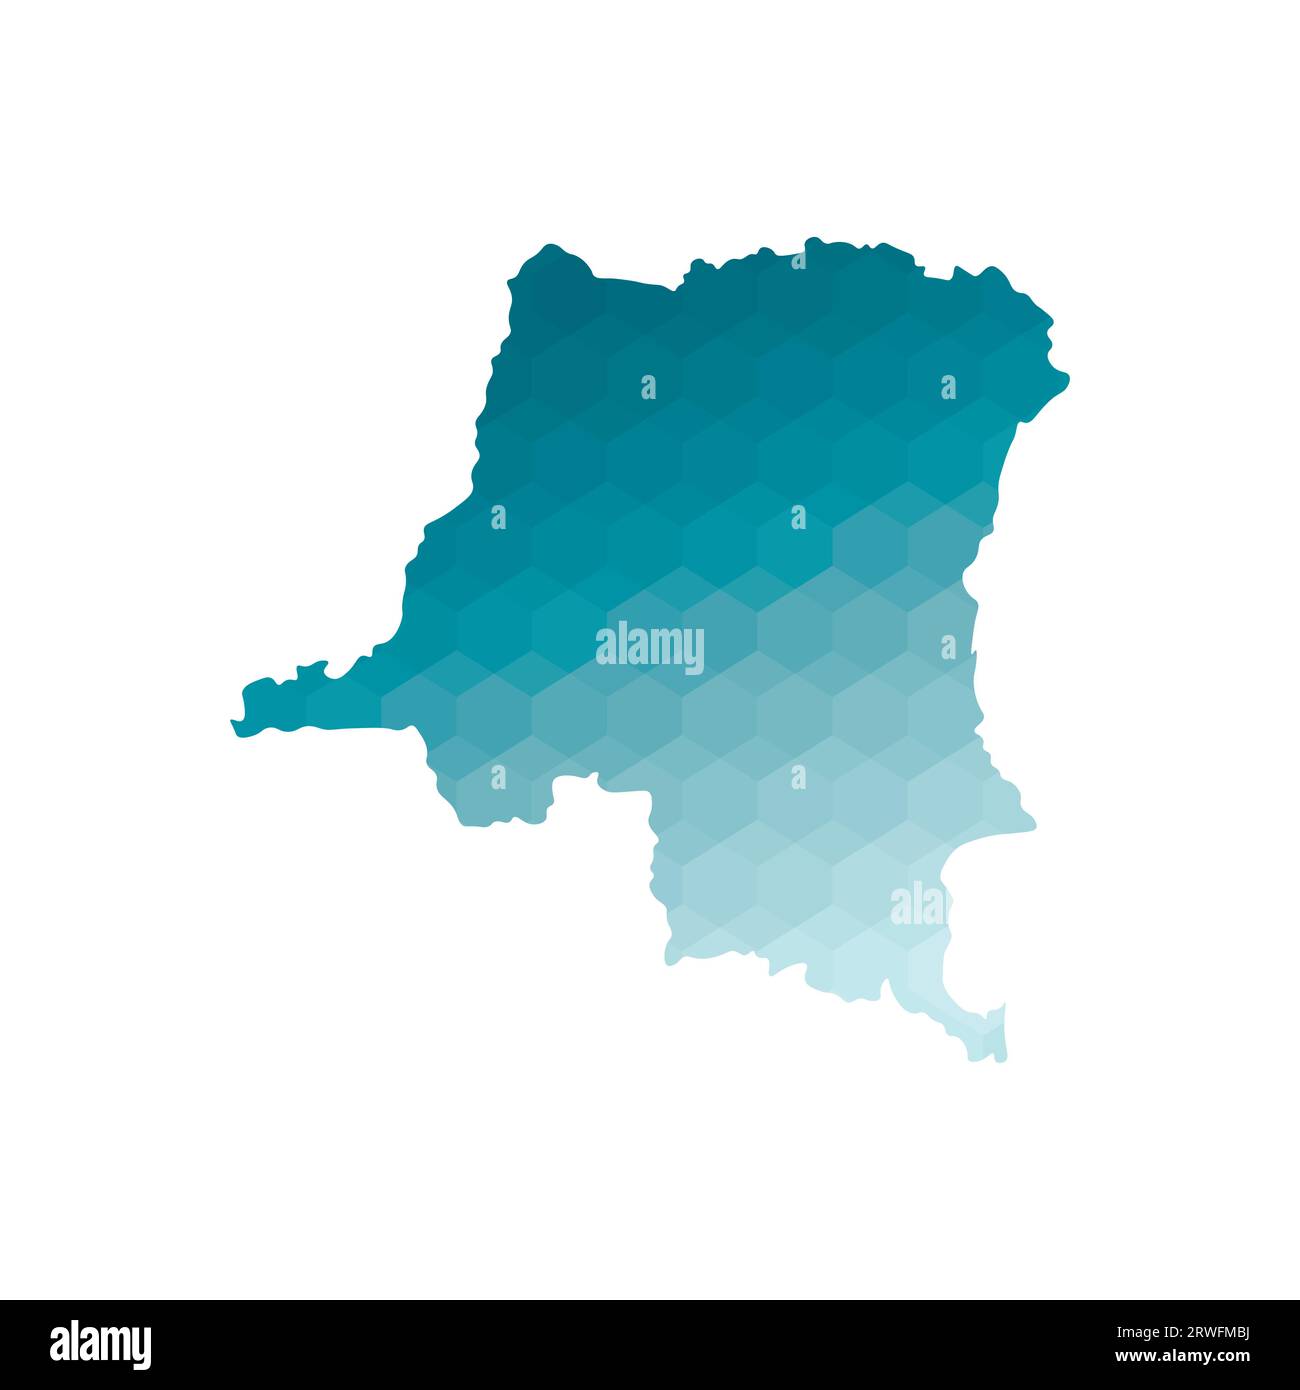 Vektor isolierte Illustration Symbol mit vereinfachter blauer Silhouette der Demokratischen Republik Kongo Karte. Polygonaler geometrischer Stil. Weißer Hintergrund Stock Vektor